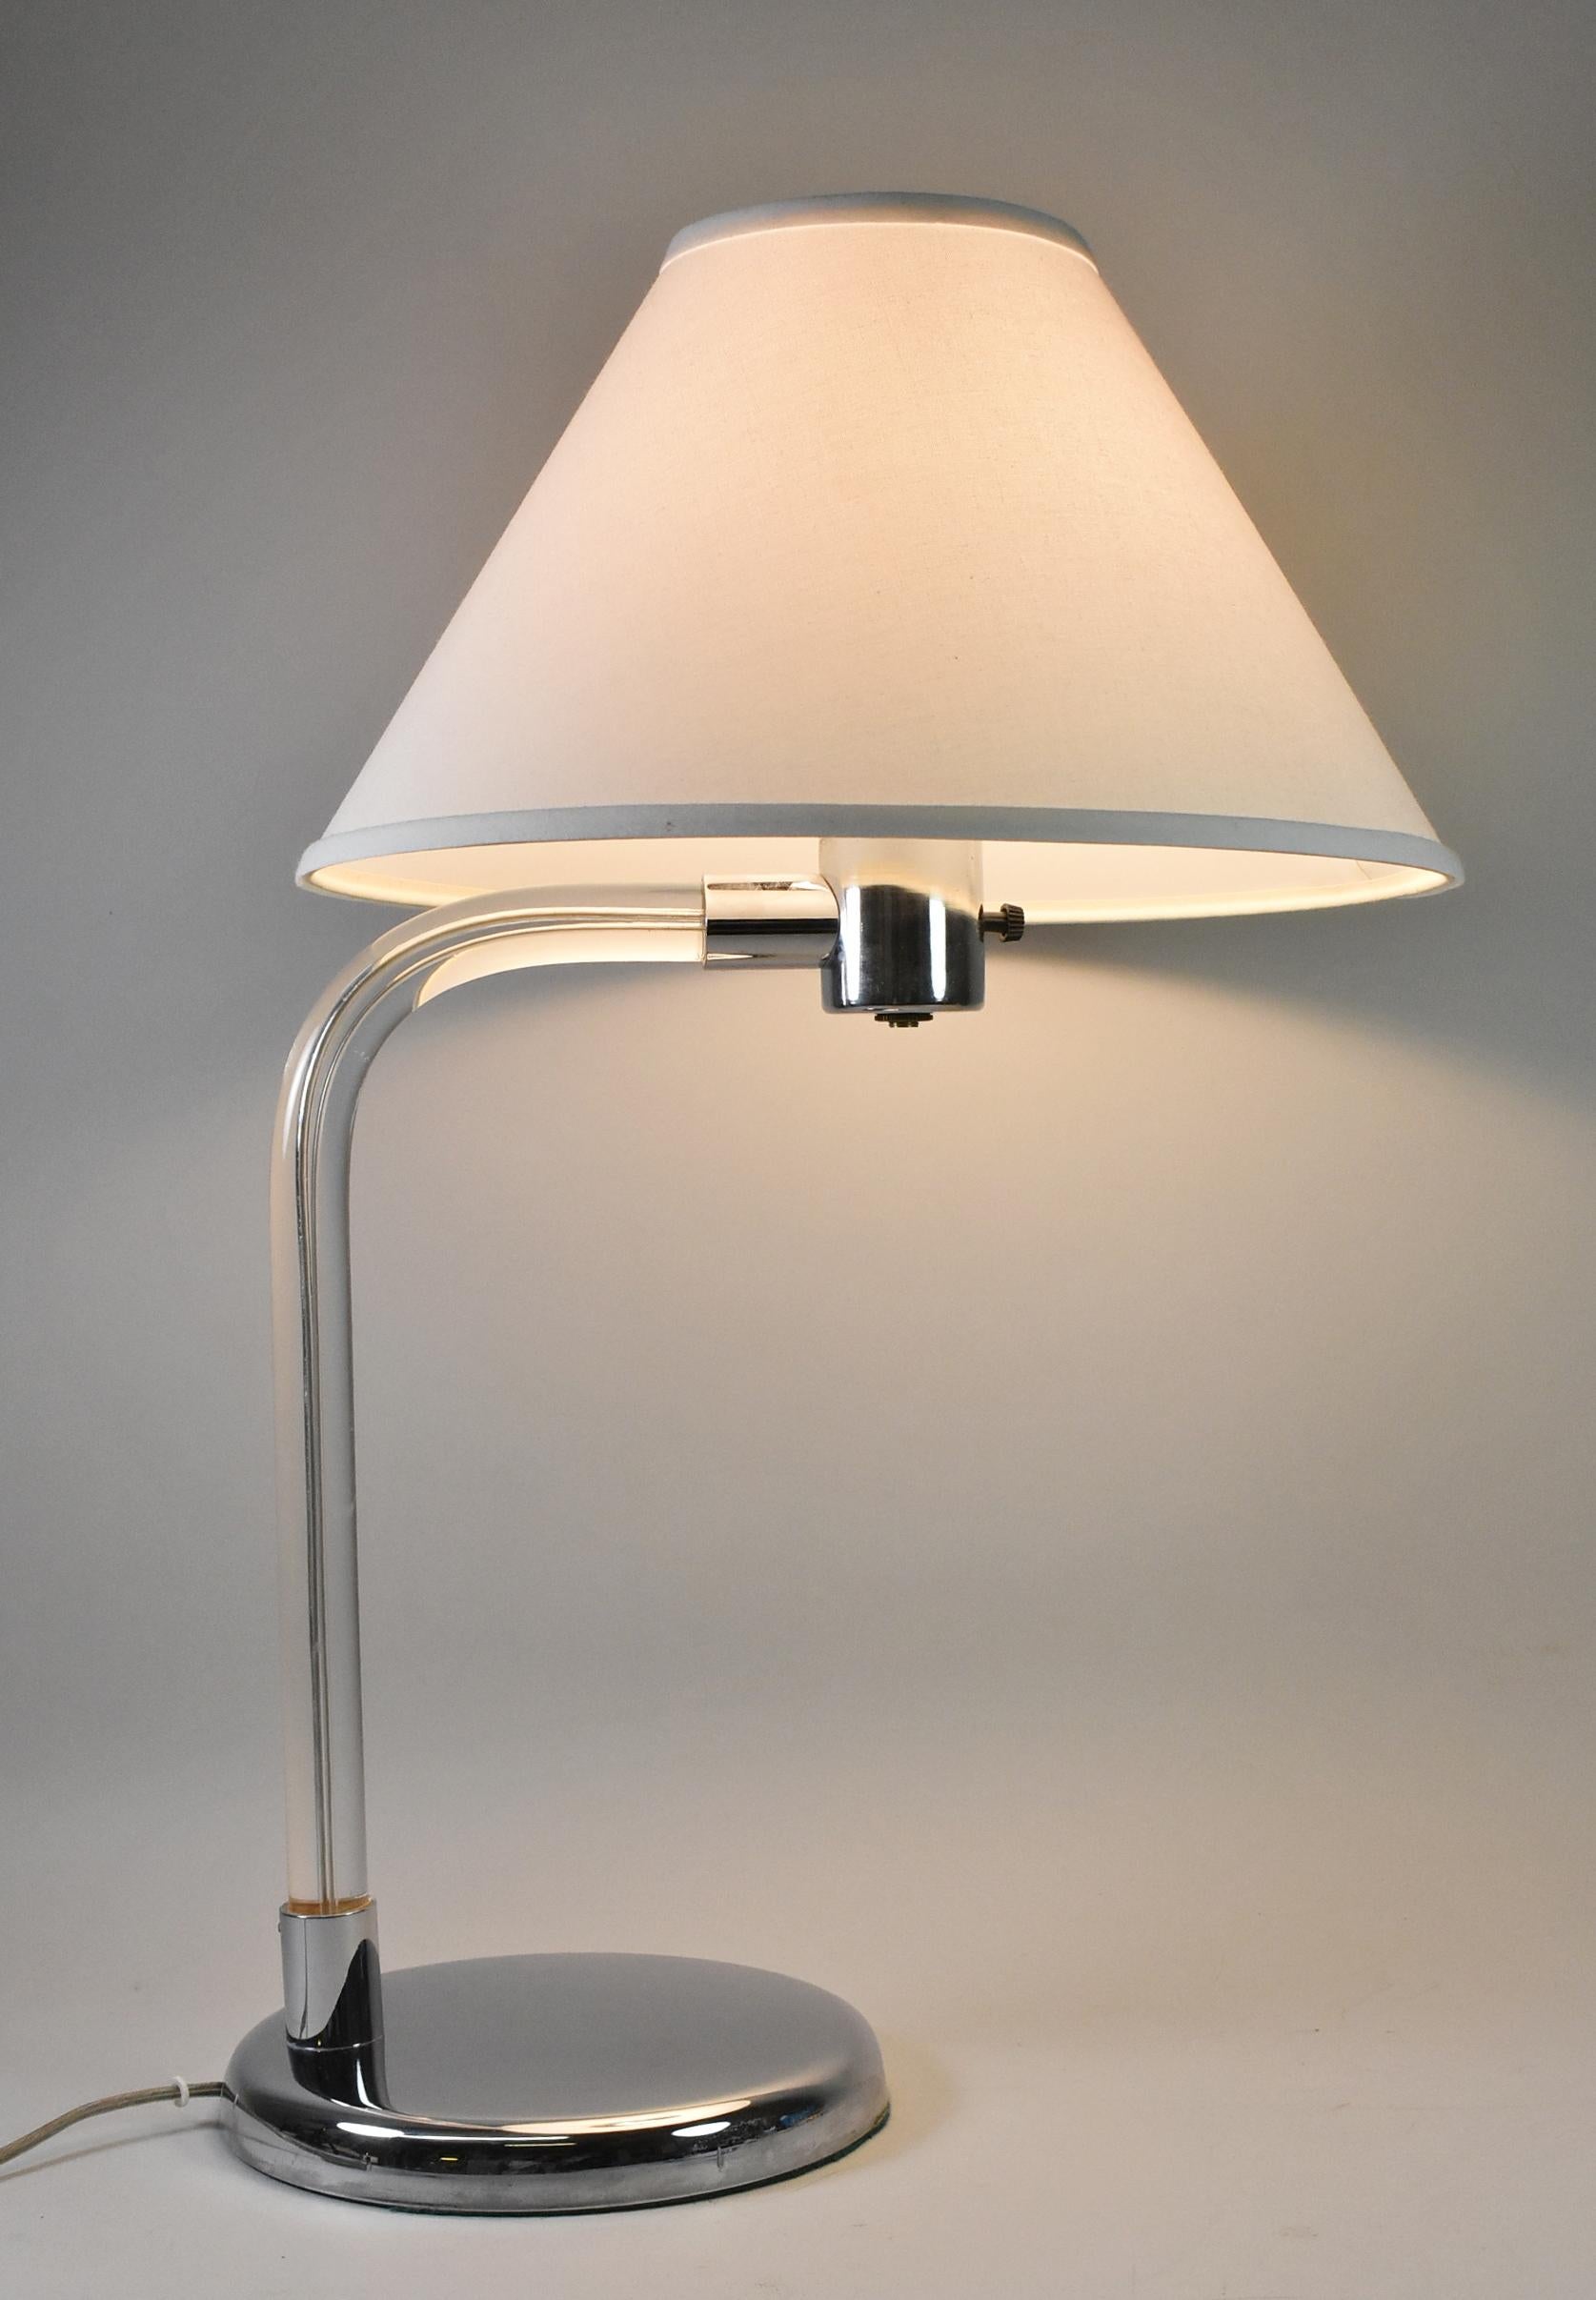 Cette magnifique lampe de table du milieu du siècle a été conçue par Peter Hamburger pour Knoll. La tige en Lucite à col de cygne est coiffée d'une base et d'une quincaillerie chromées. La base a un diamètre de 8